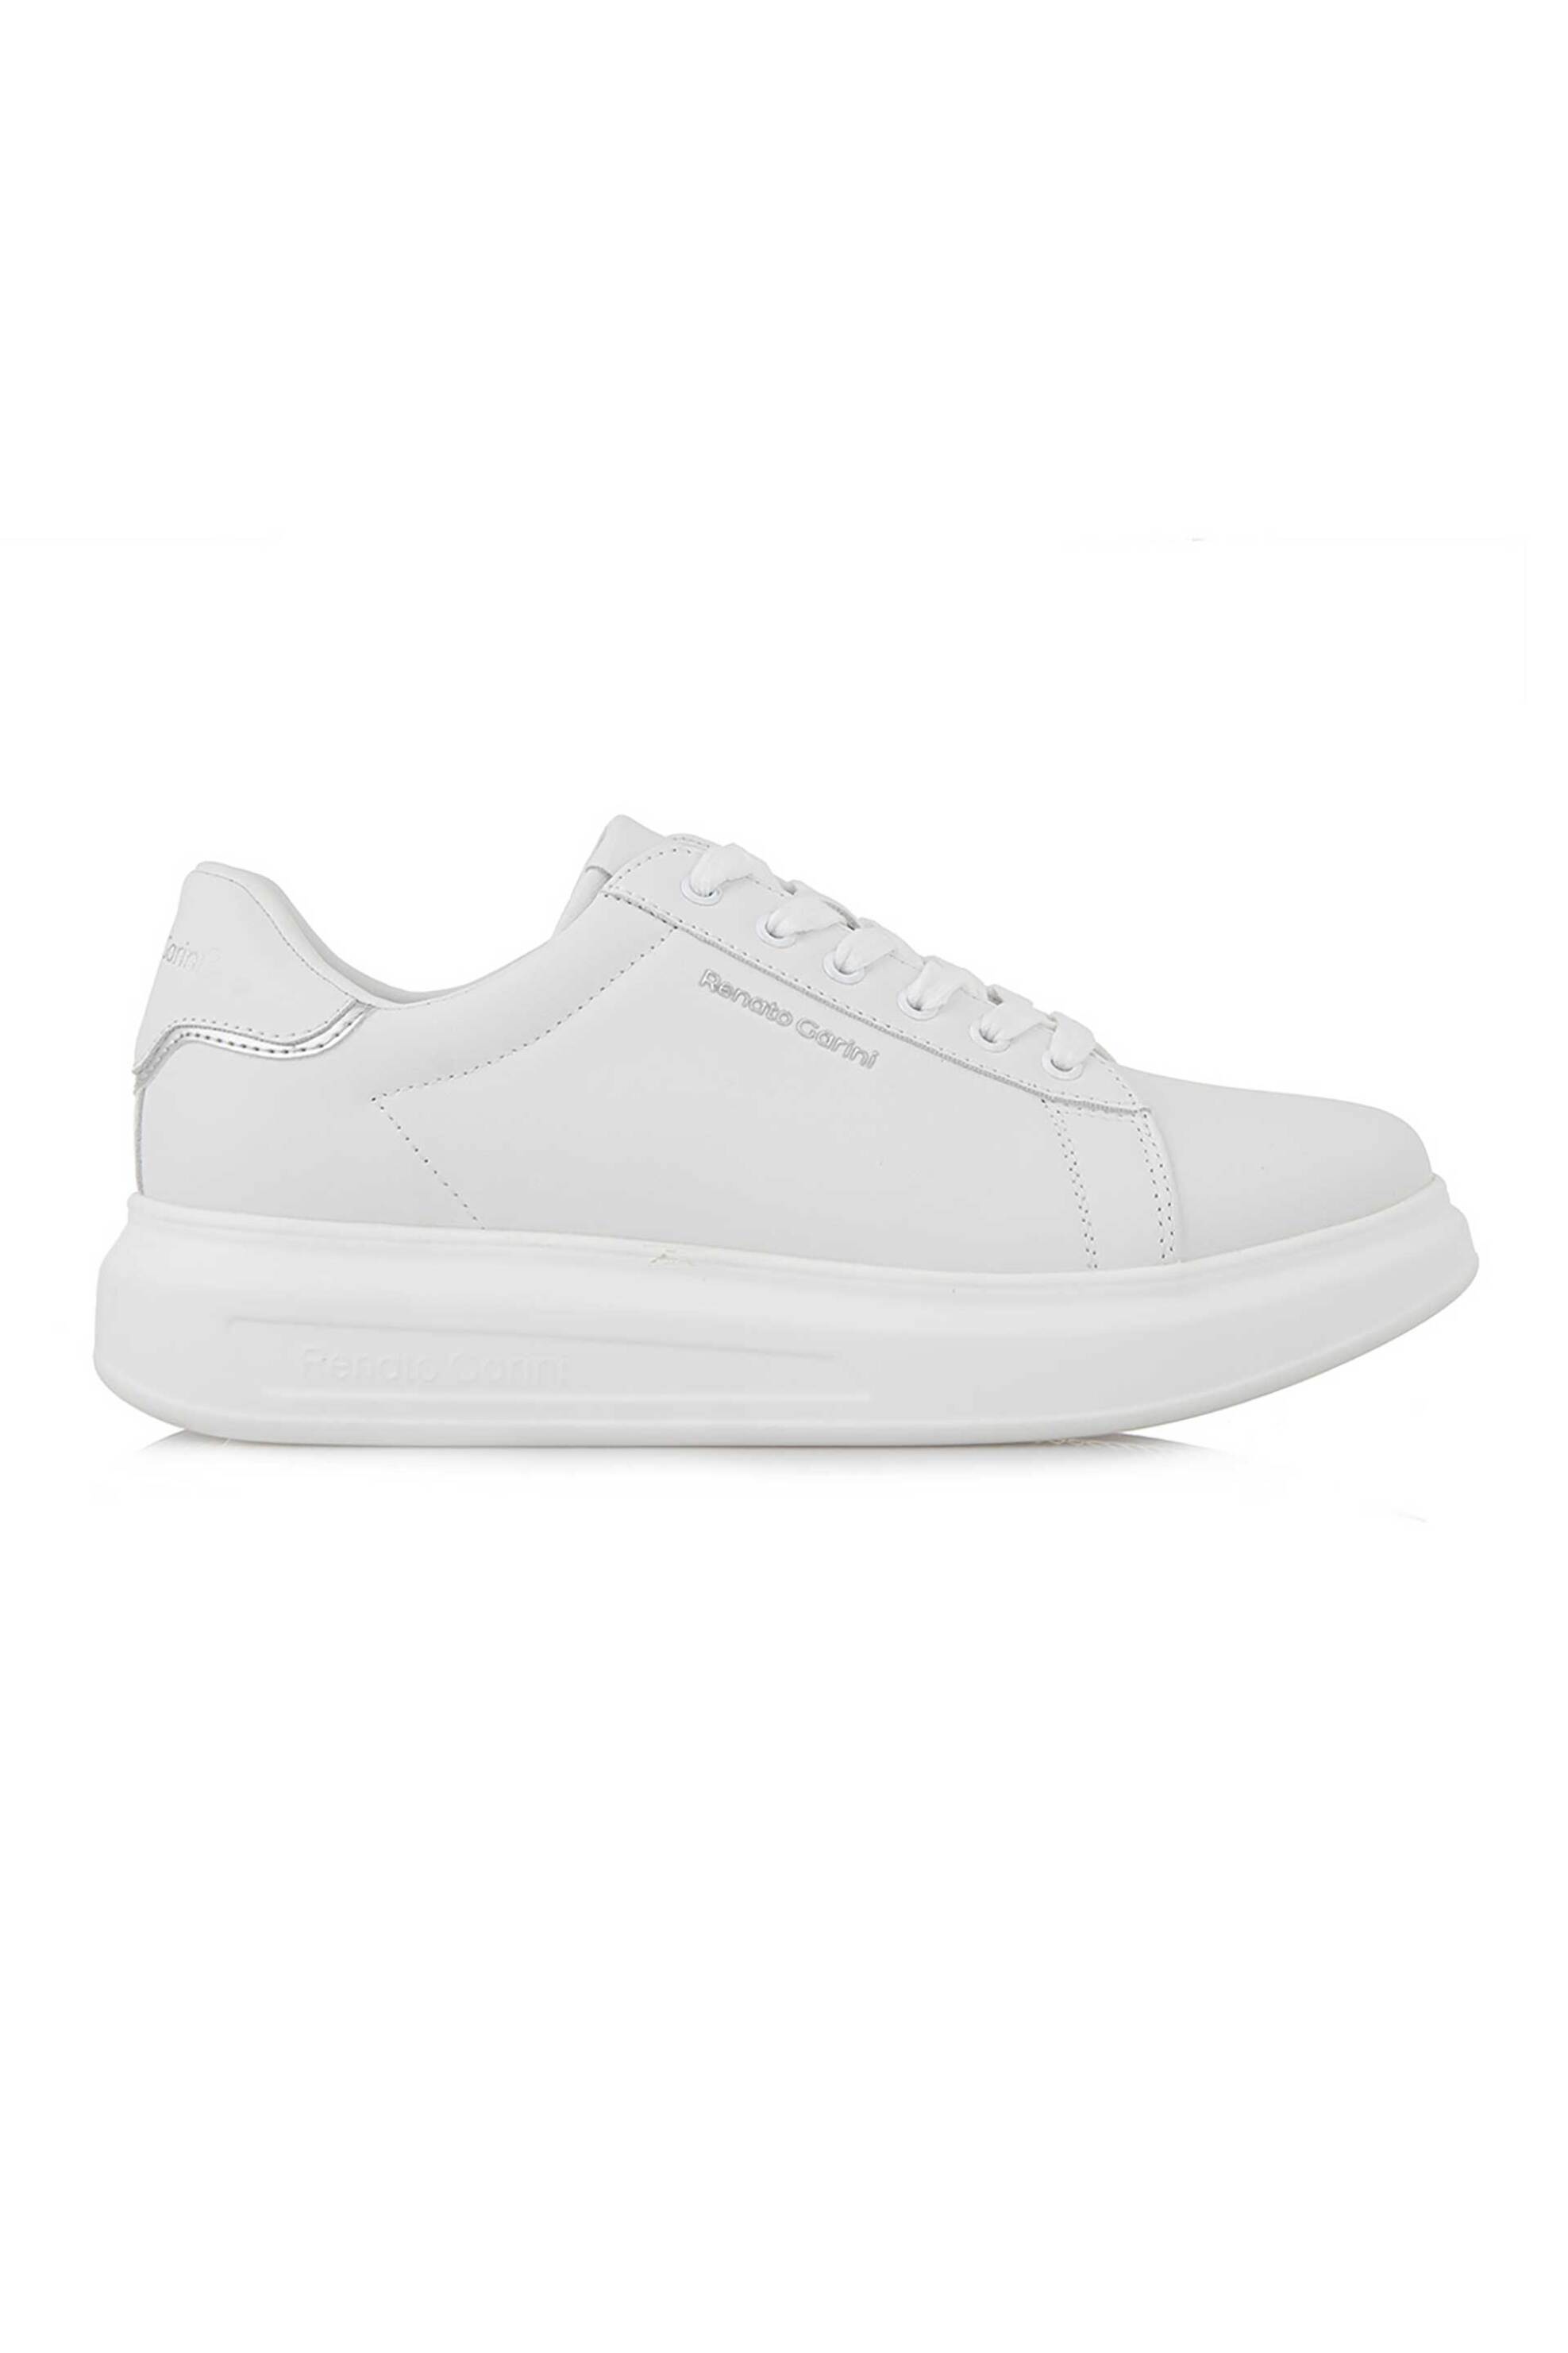 Ανδρική Μόδα > Ανδρικά Παπούτσια > Ανδρικά Sneakers Renato Garini ανδρικά sneakers με λογότυπο - S57002513480 Λευκό